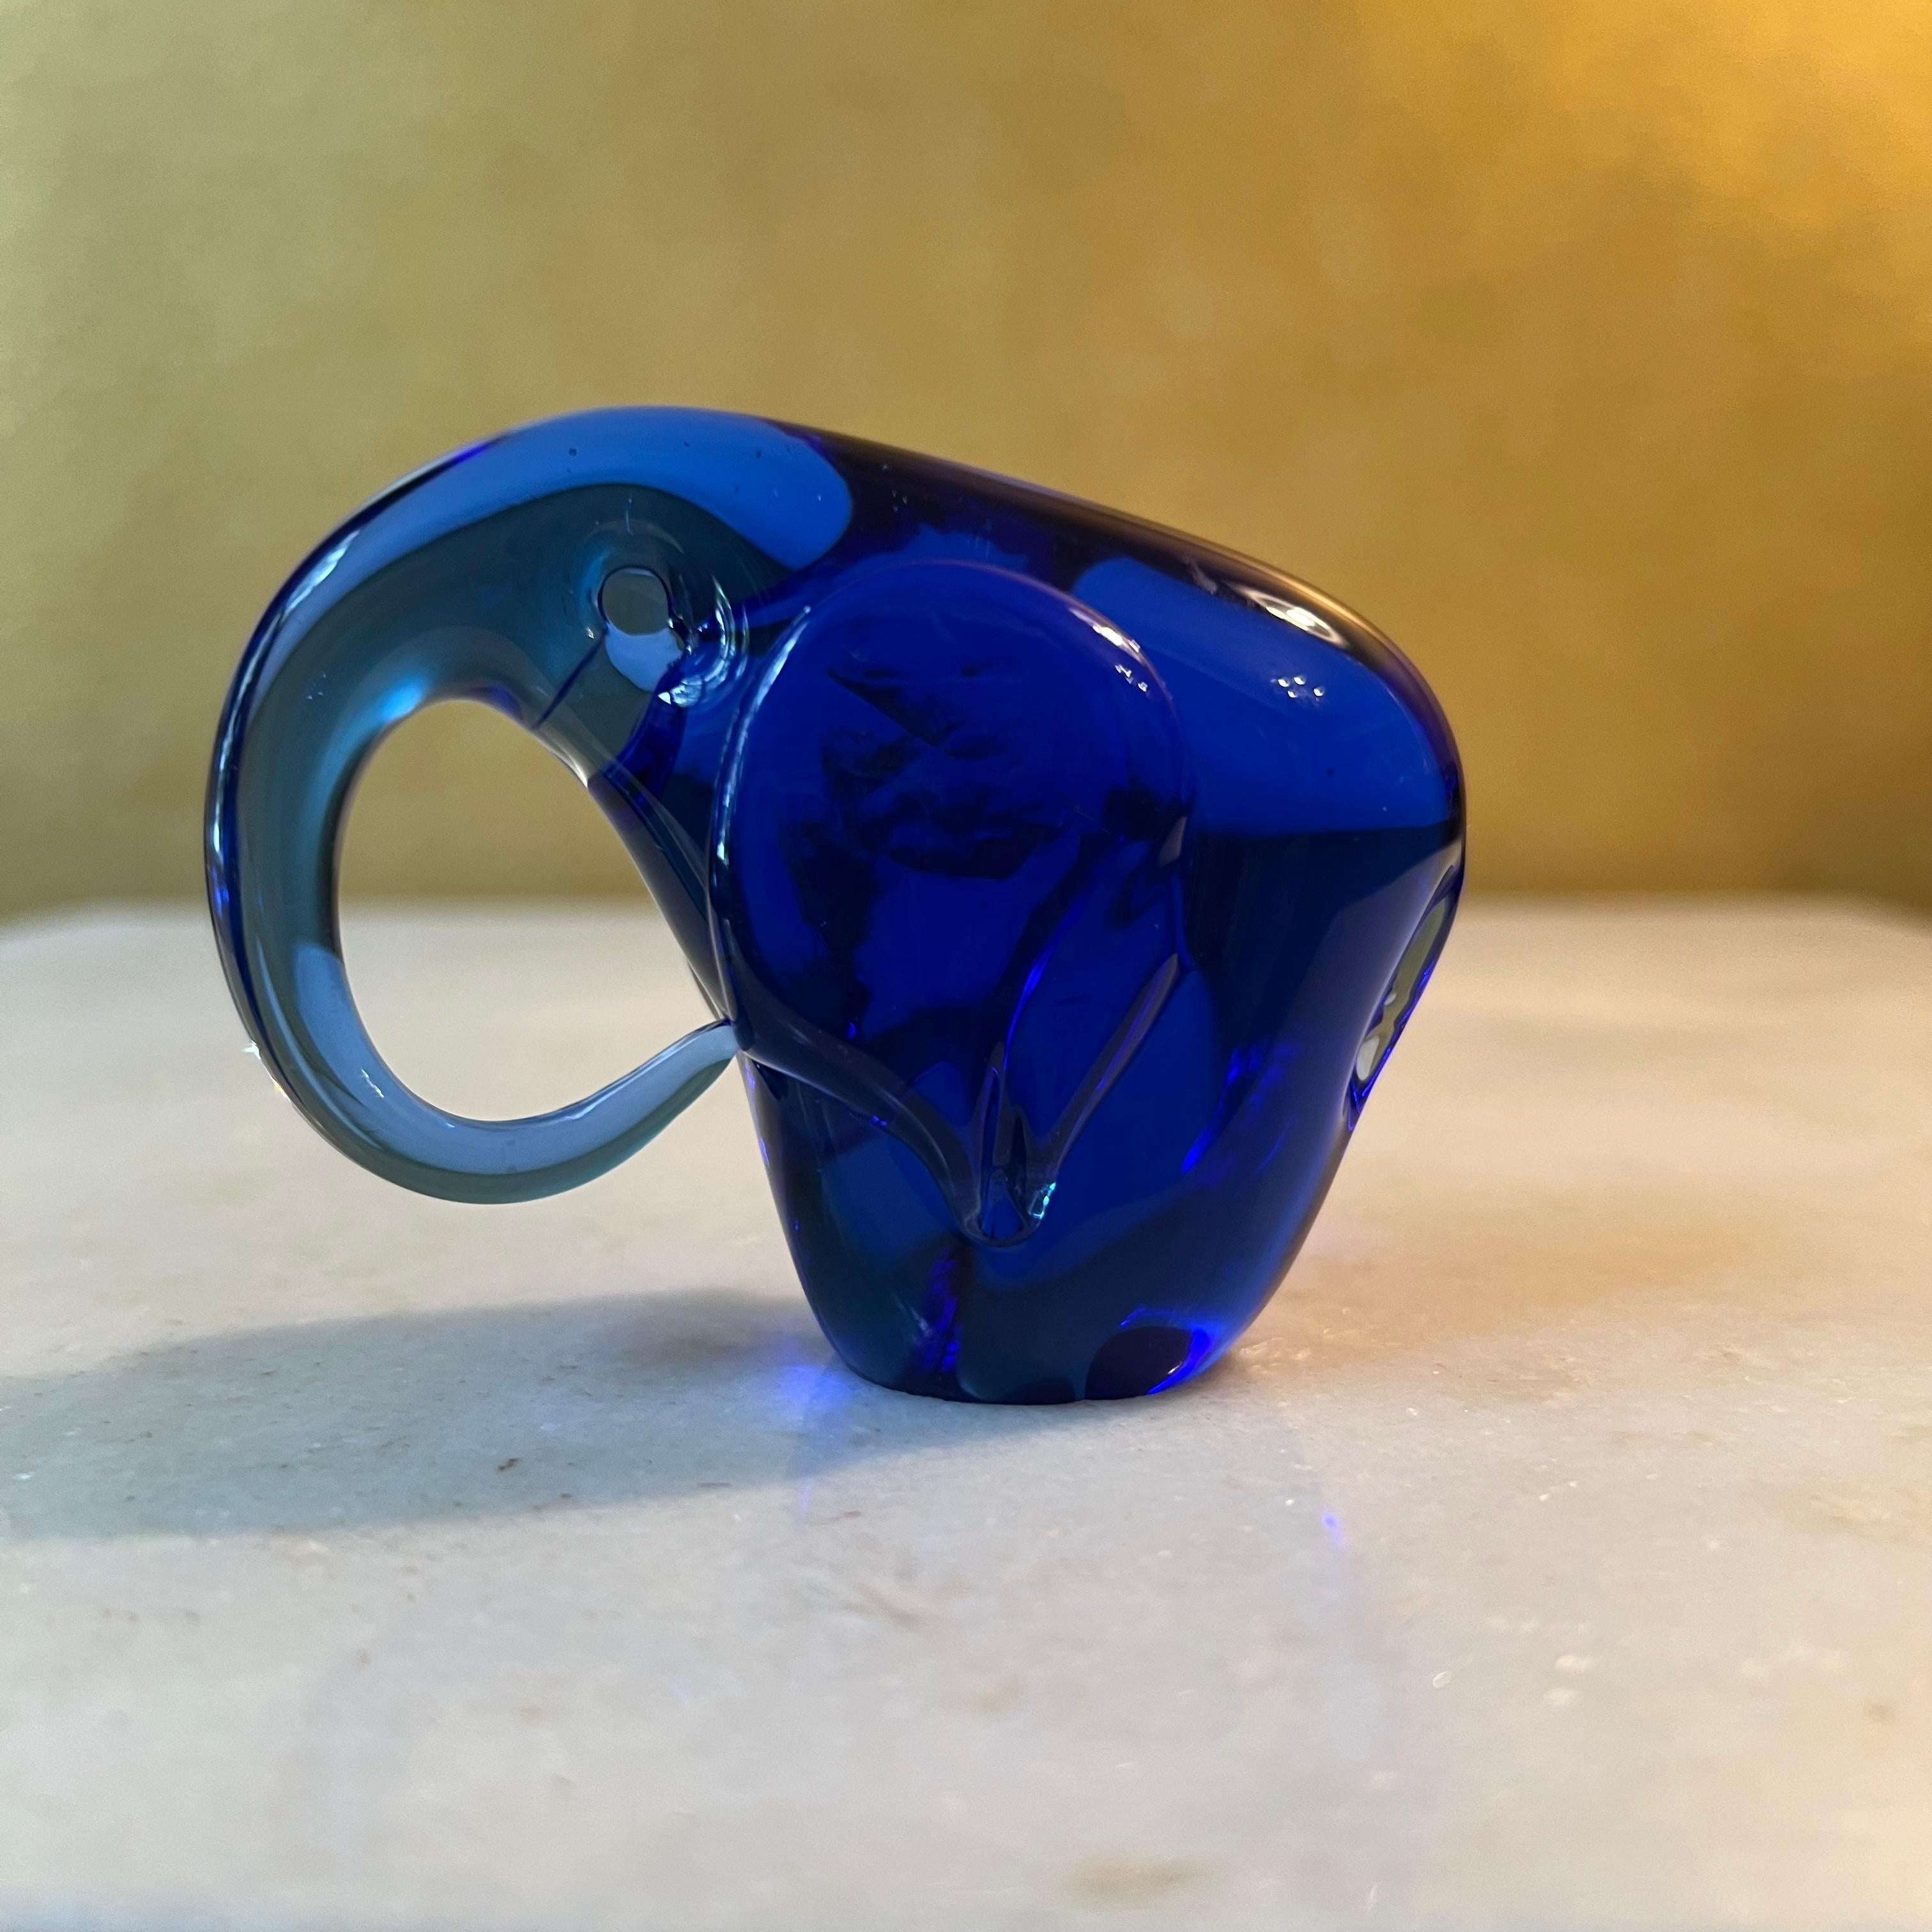 Kobaltblaue Elefantenfigur, einige leichte Spuren. 

MATERIAL: Glas

Abmessungen: 5,5 cm hoch, 8 cm lang, 3,5 cm breit

Versand über Australia Post mit Tracking verfügbar